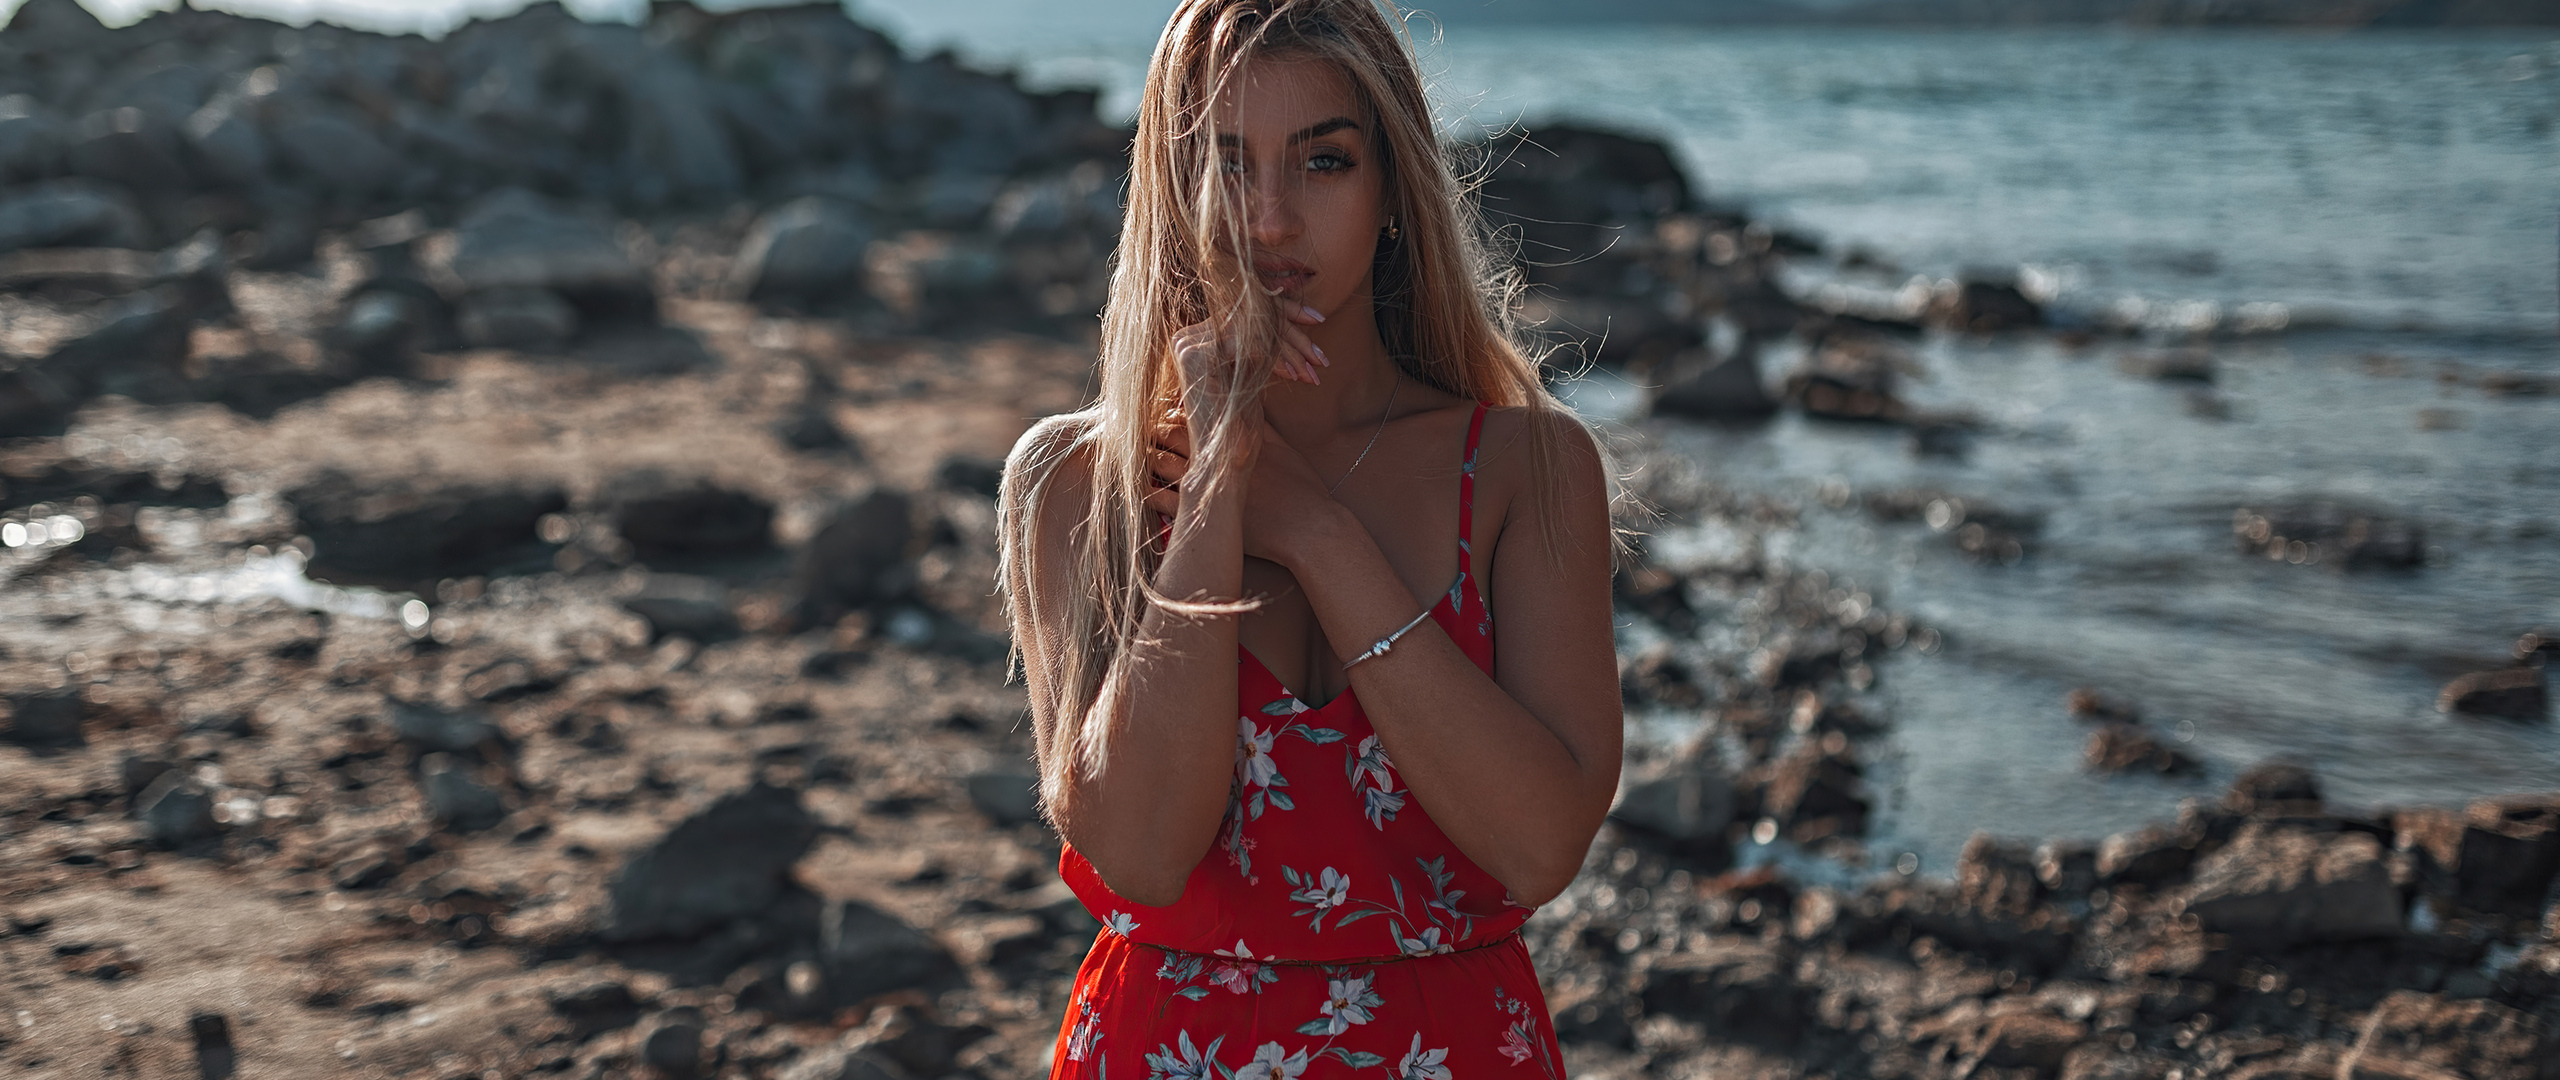 red-dress-blonde-beach-4k-qw.jpg